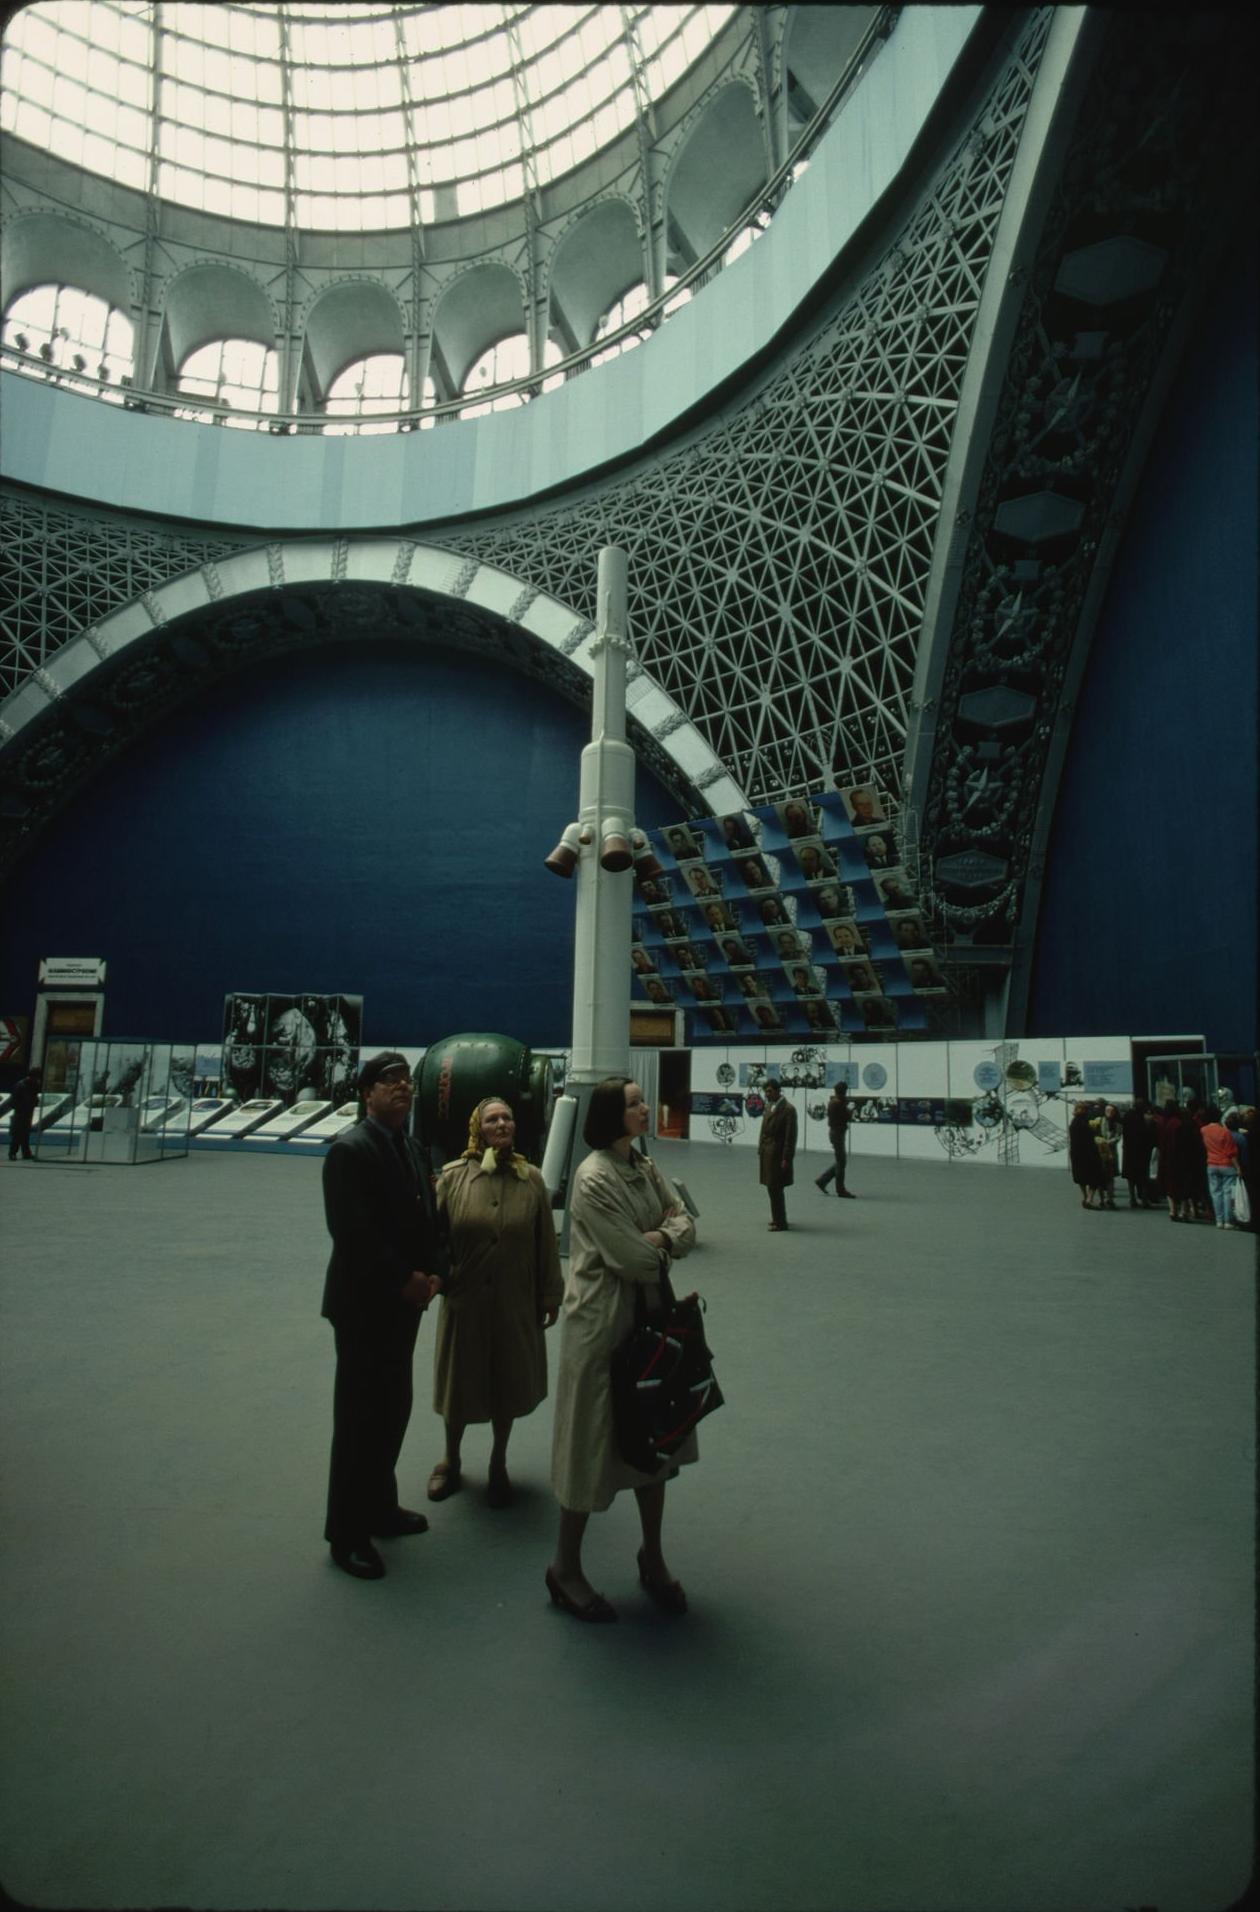 Москва в 1987 году, глазами Роджера Ресмайера